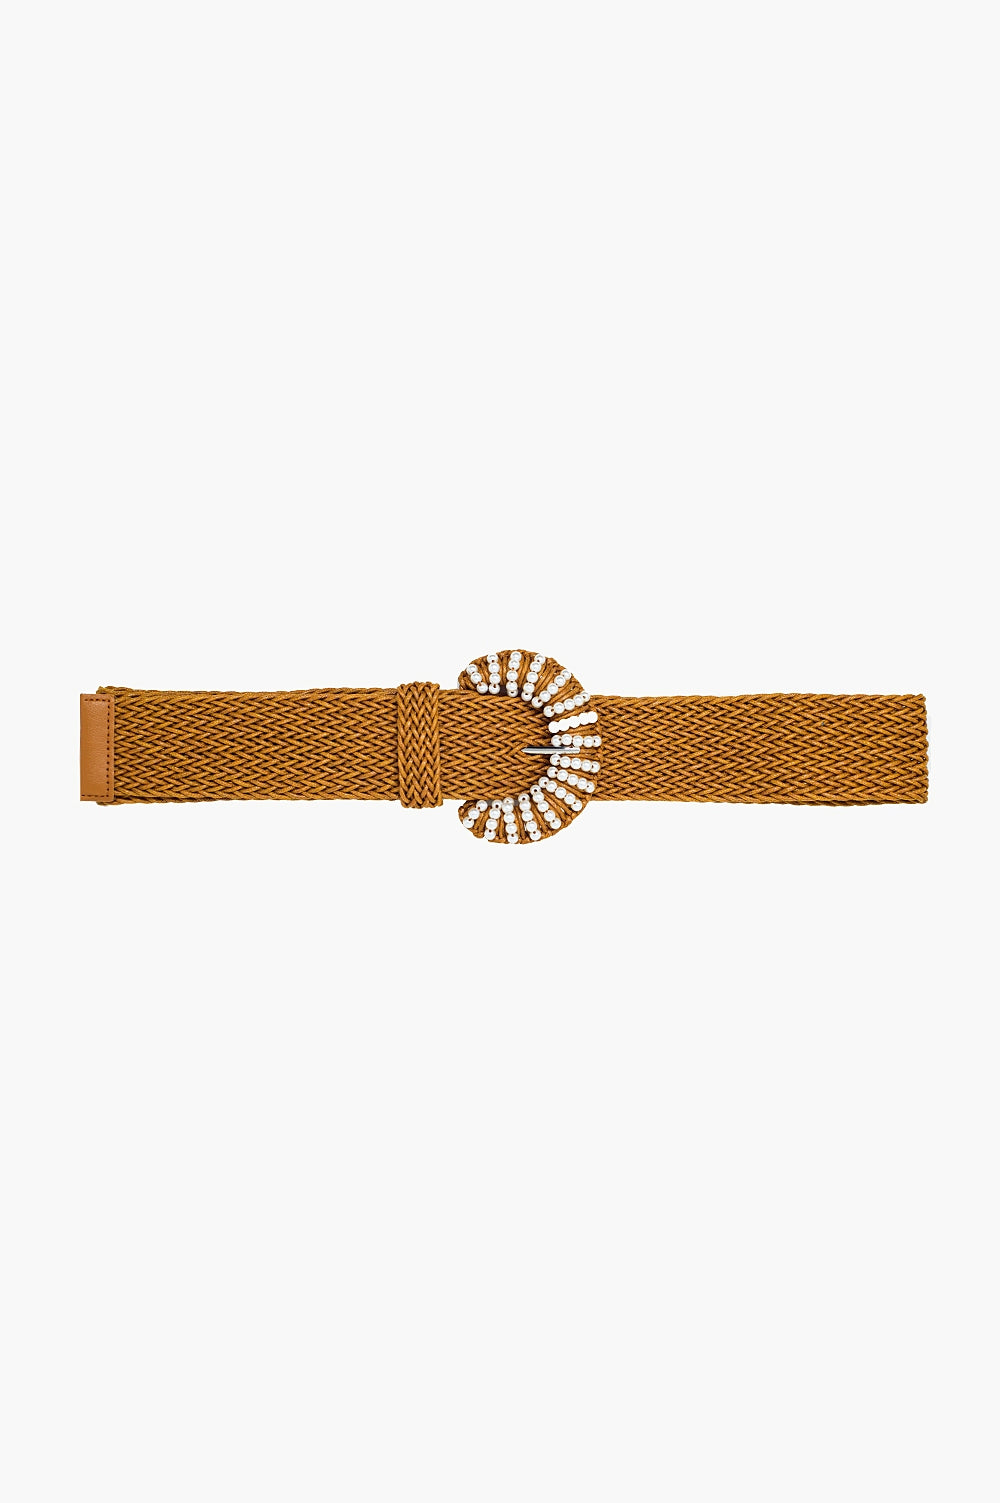 Cintura marrone intrecciata con fibbia arrotondata con perline